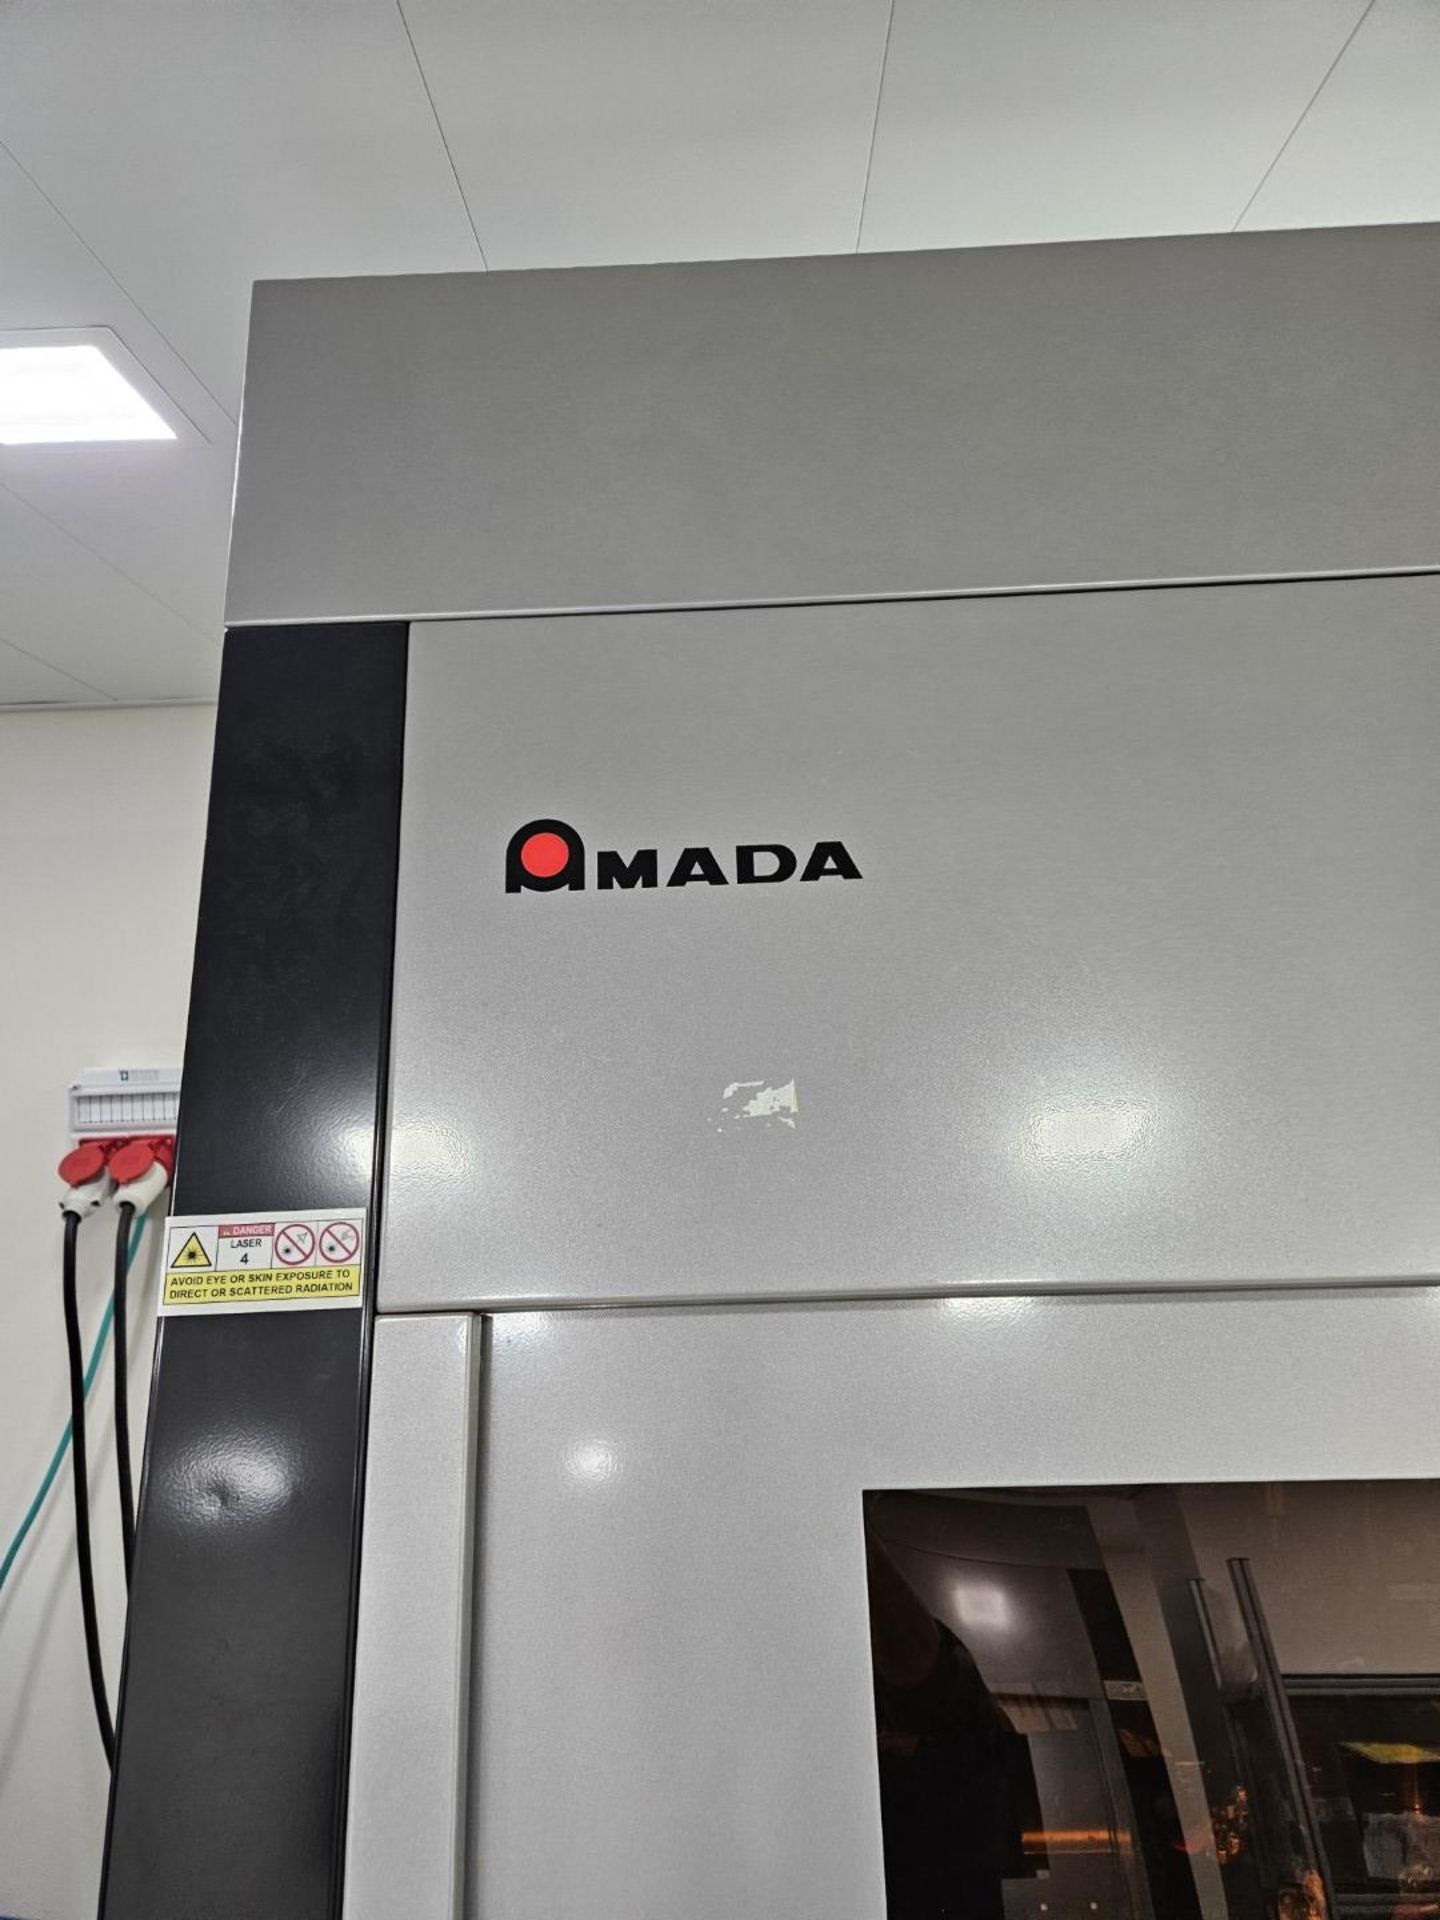 1 x Amada Miyachi Nova 6 Laser CNC Welding Workstation System - Type: 68M0106 - Year: 2019 - Image 2 of 17